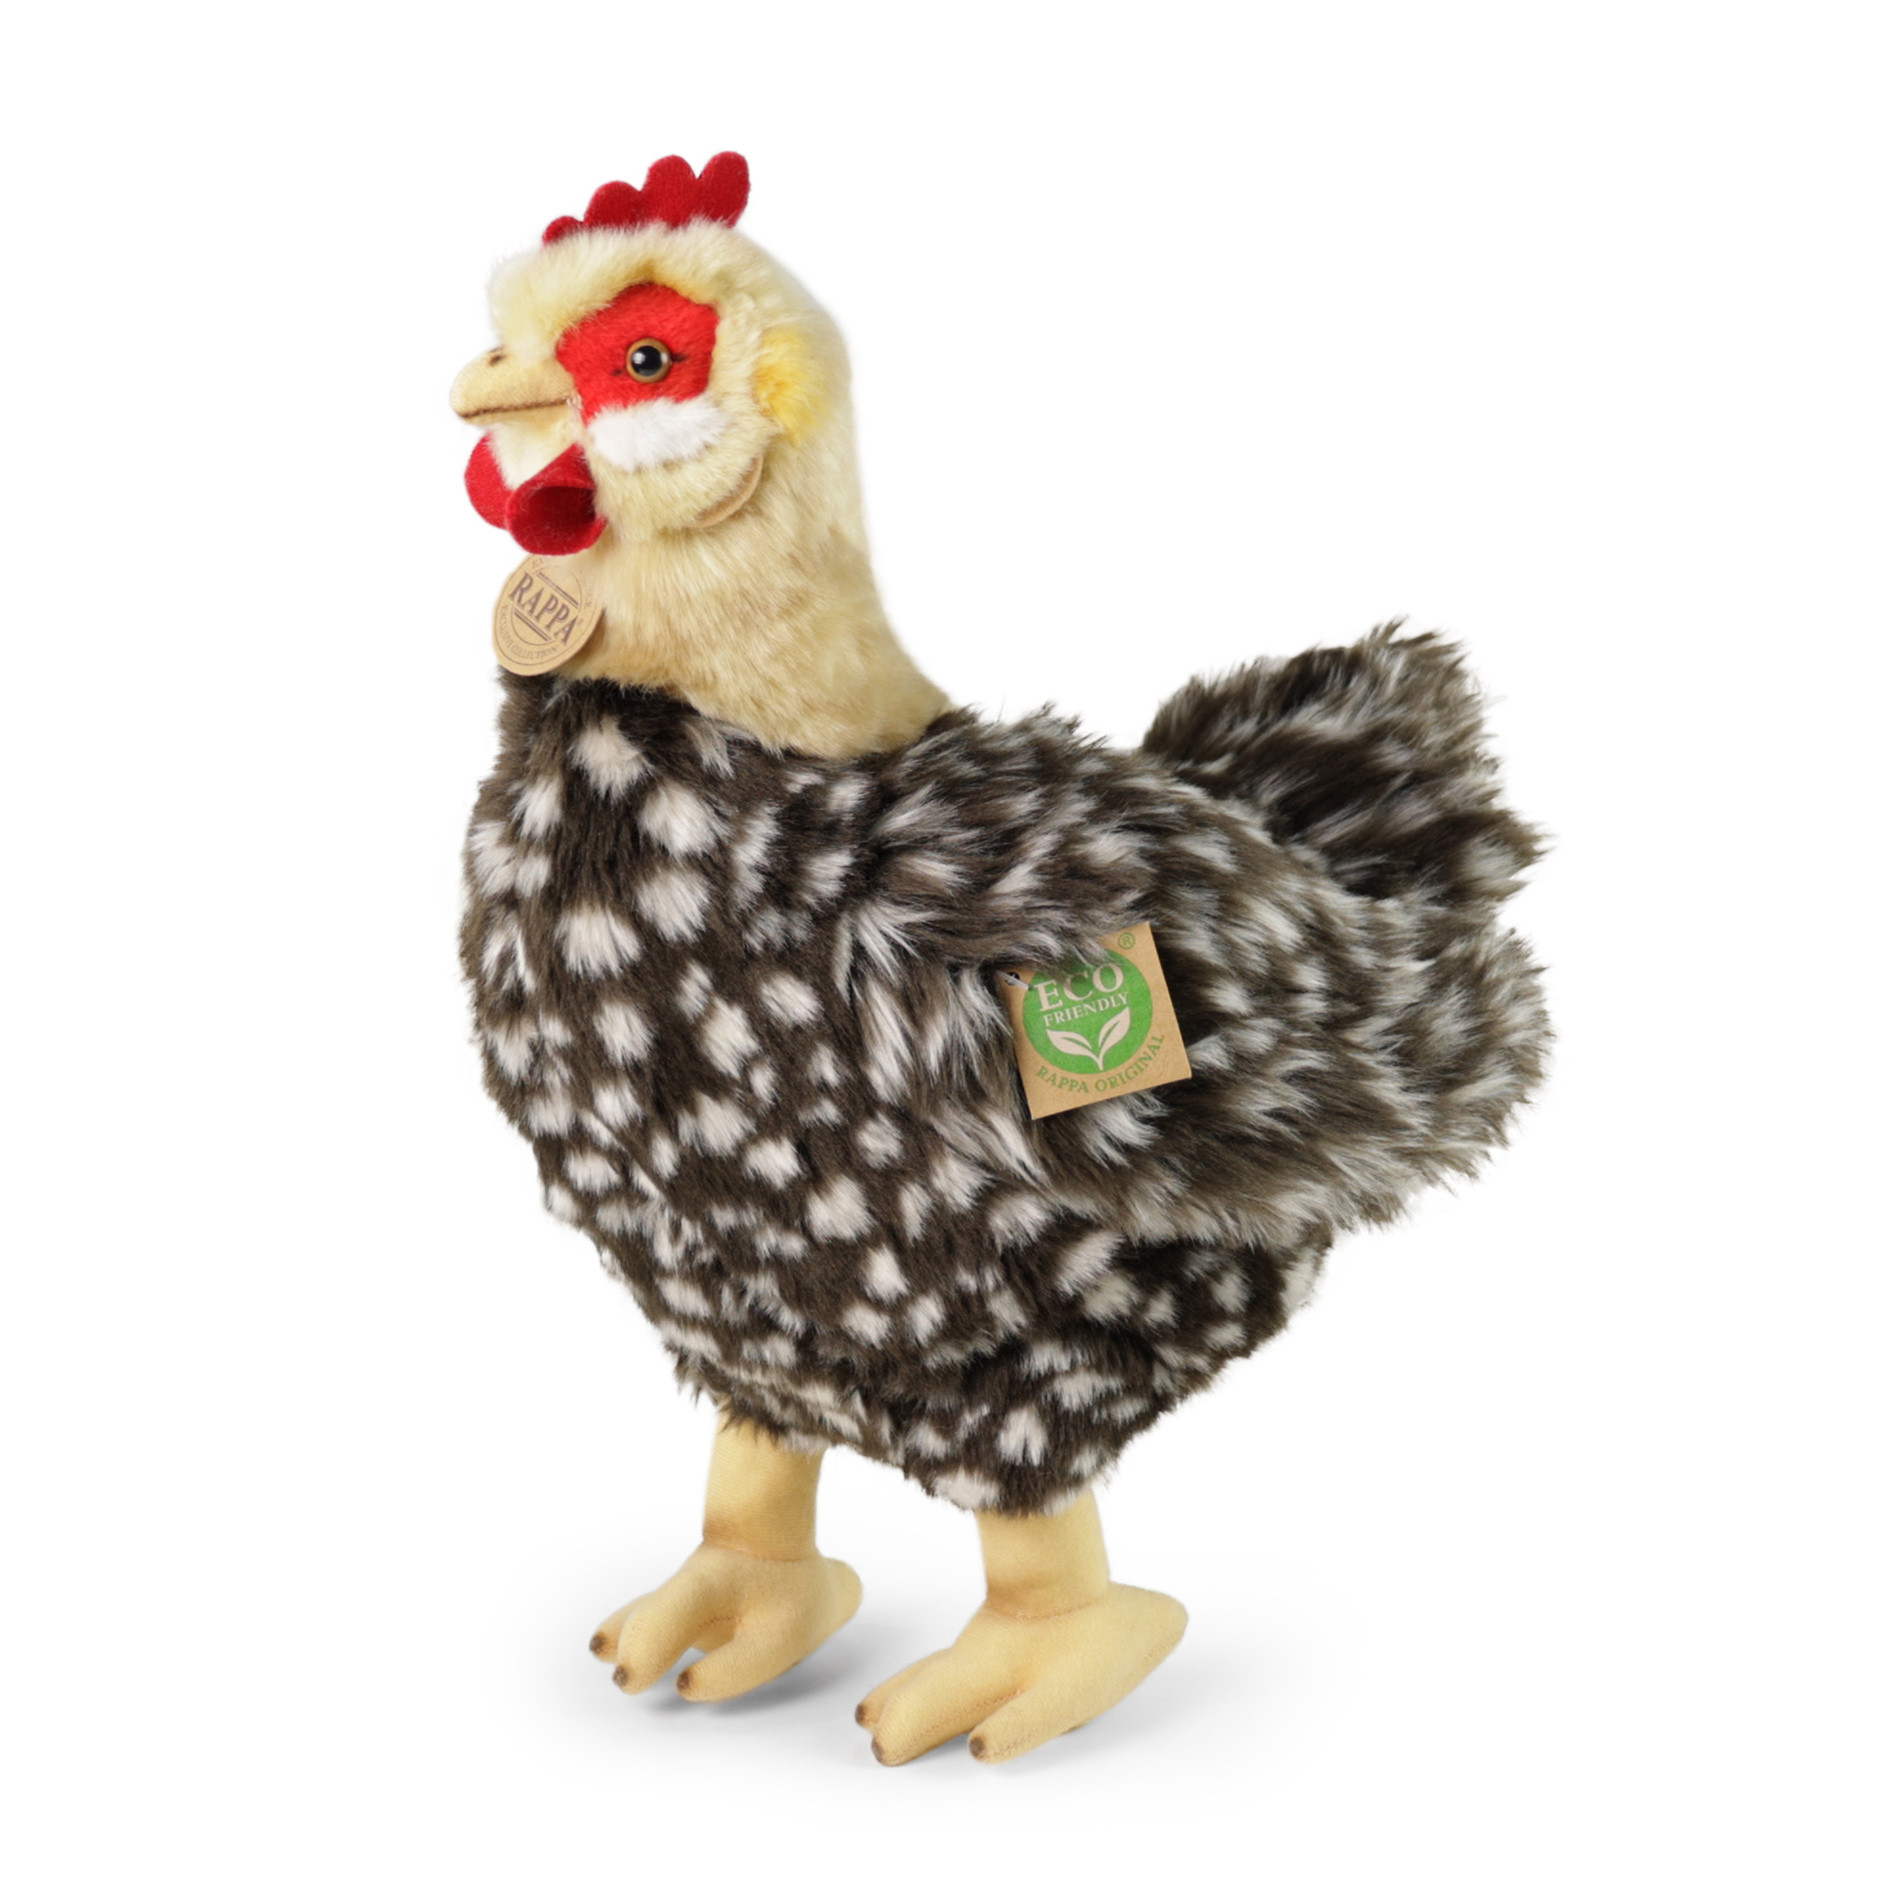 Plyšová sliepka kropenatá stojaci 33 cm s vajcom ECO-FRIENDLY